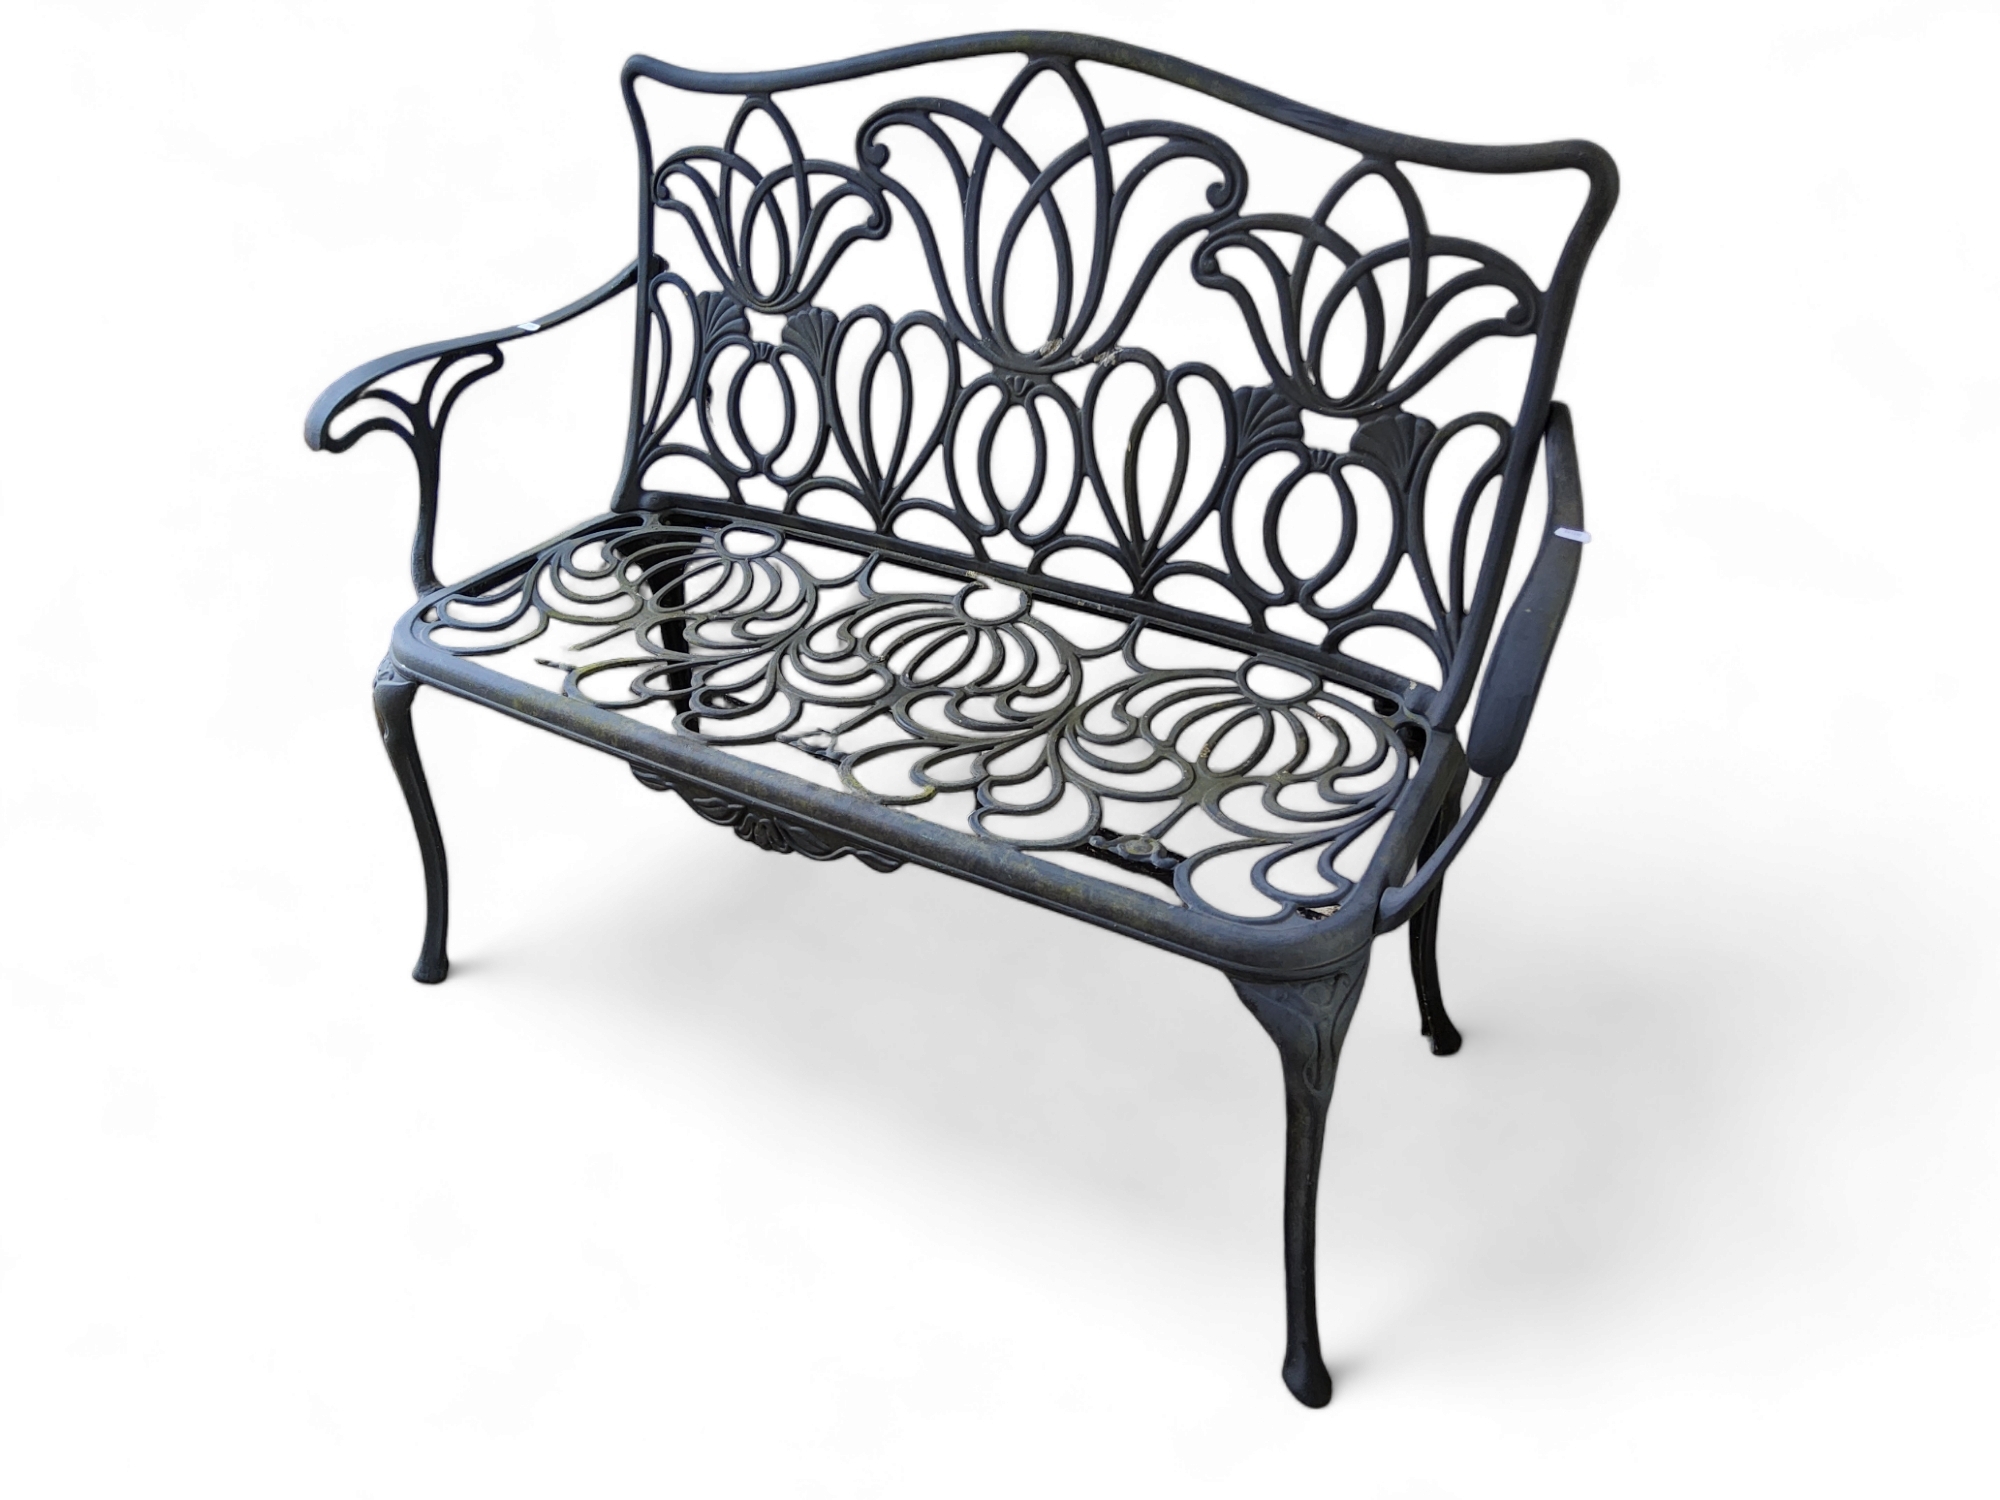 A contemporary Art Nouveau style aluminium garden two seater bench.